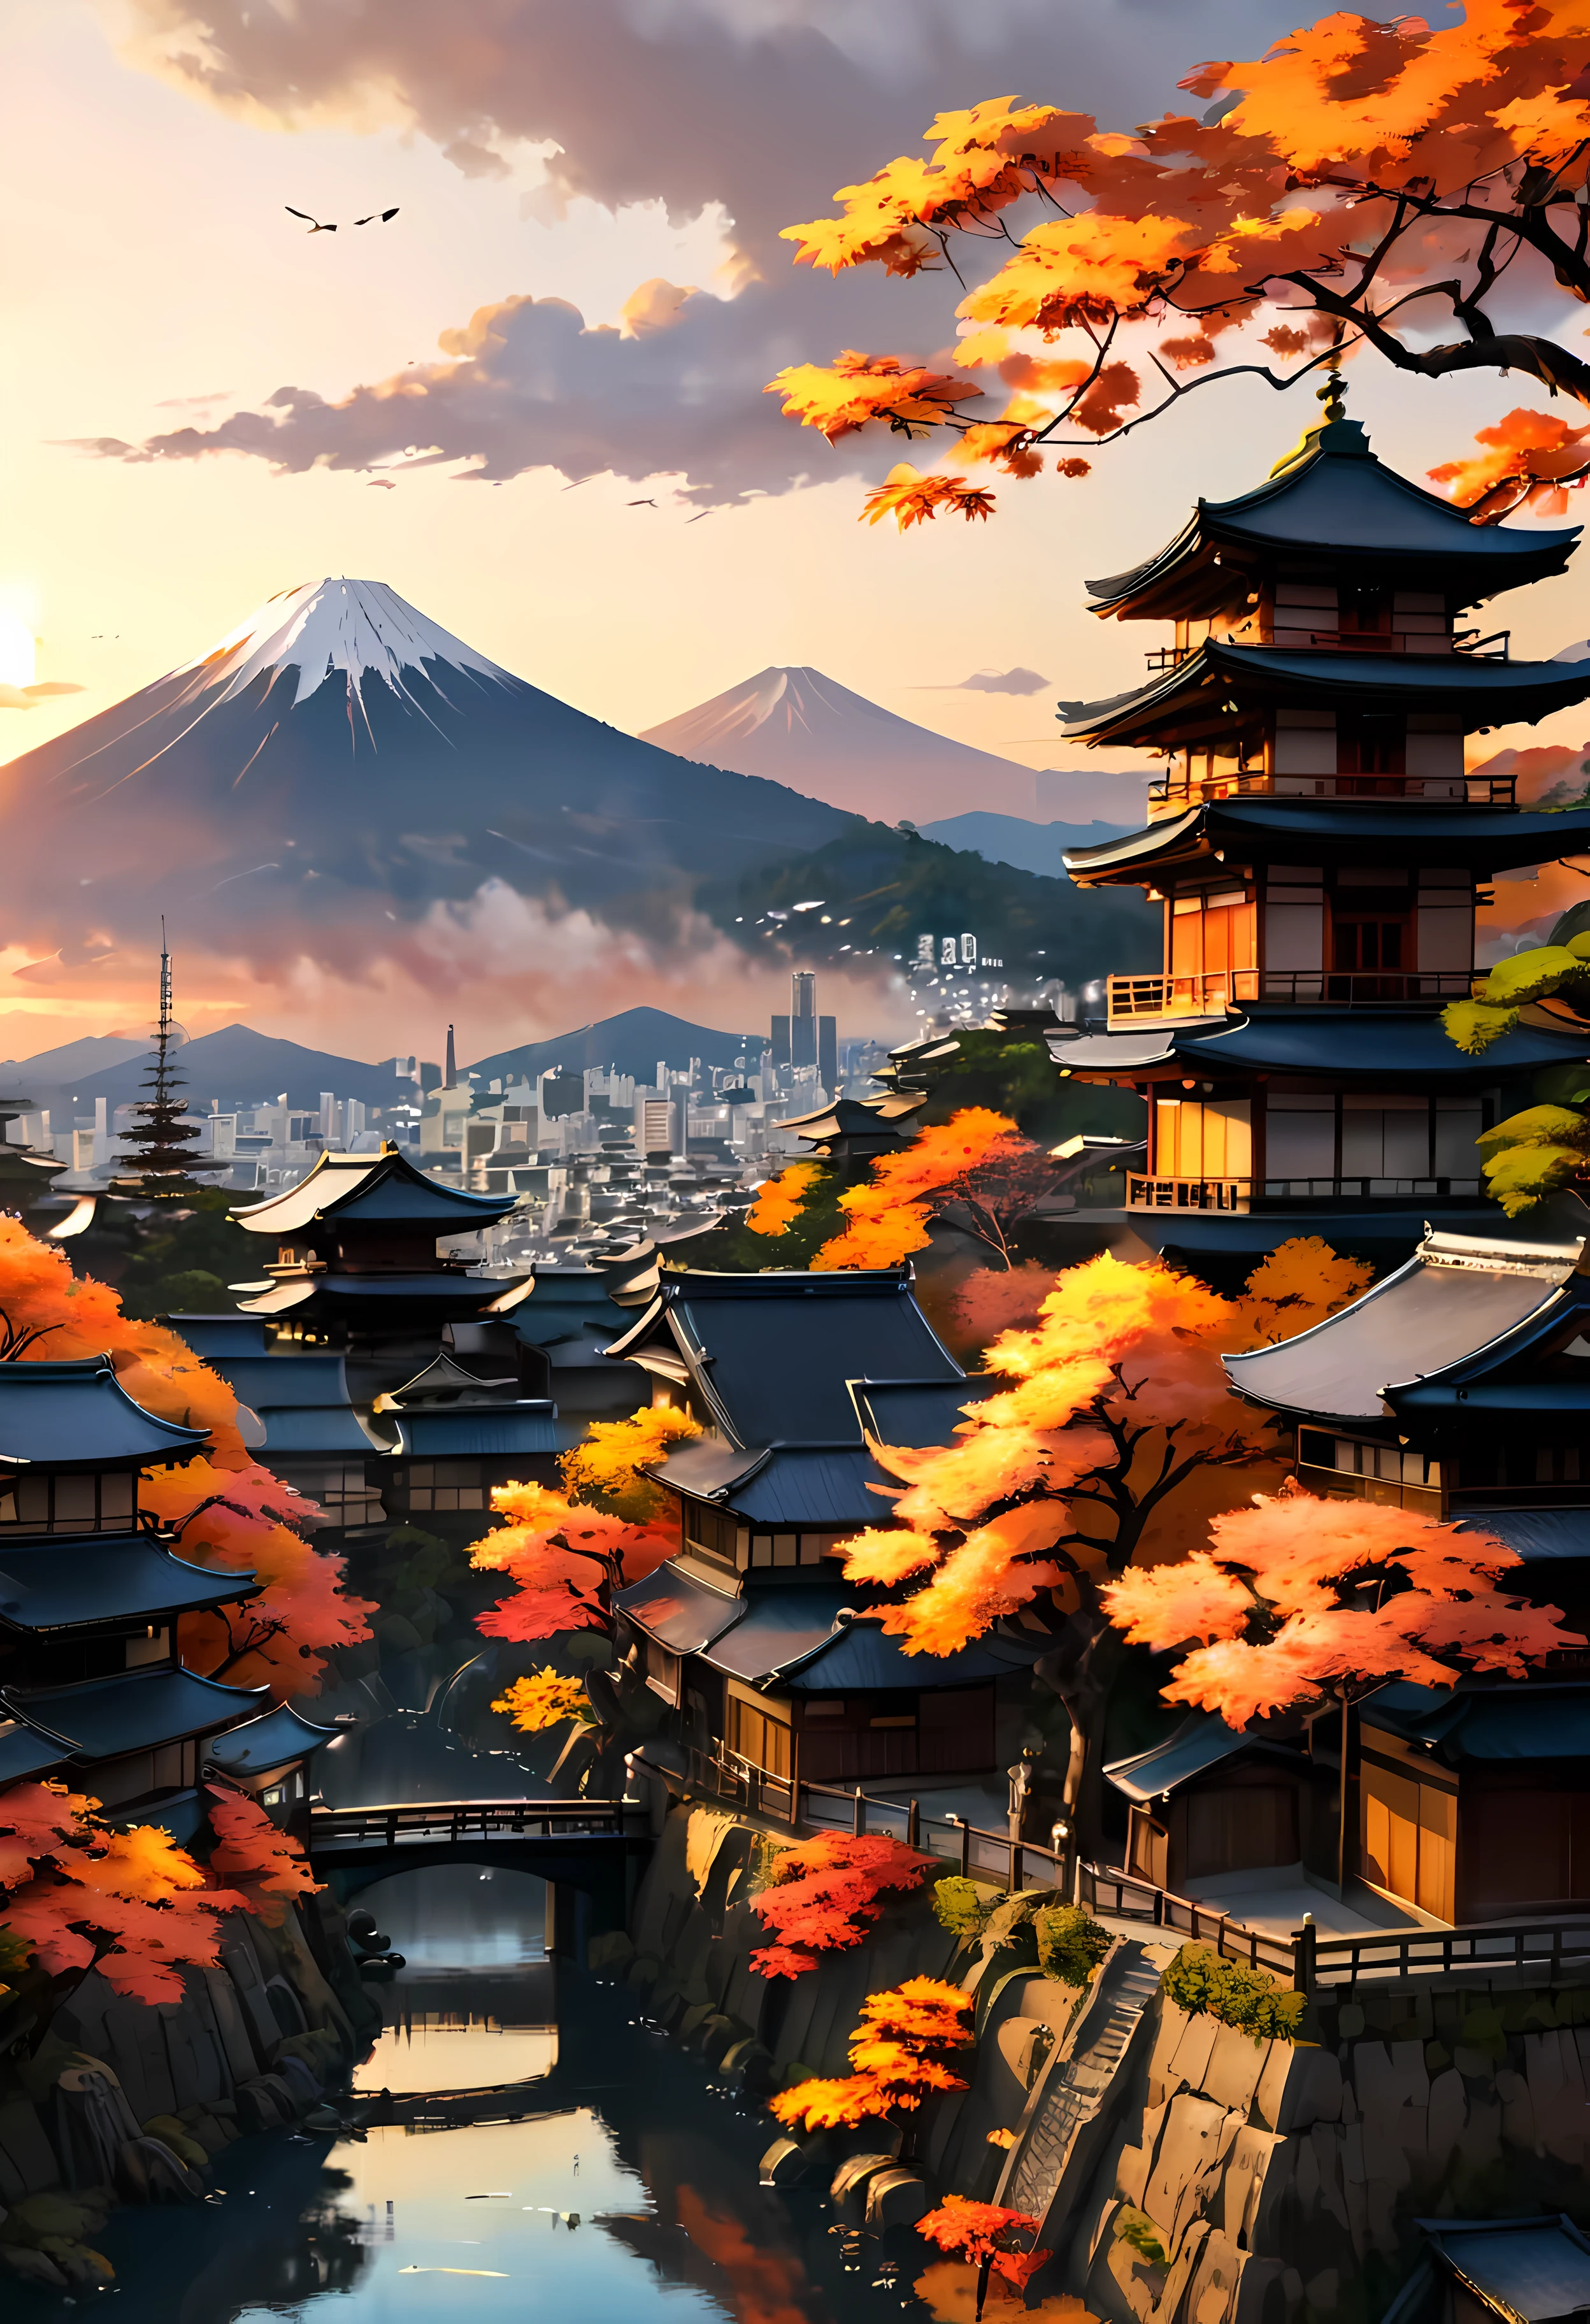 公園のテラスにある赤い秋の木は、山の景色とともに京都の古都を見下ろしています。, 夕日の光を浴びた魅惑的な古代都市の風景,((ゴールデンアワータイム):1.2),((日本の古代都市):1.2),((秋の夕焼け空):1.1),繊細なゴールデンアワーの光, 素晴らしい壁紙, 美しい環境, 楽観的なマットペインティング, 美しいデジタルアート, 日本の古代都市 background, 美しく緻密なシーン, UHD地下, UHD 風景, 壮大なコンセプトアート, 美しい古代都市. |(最大16K解像度の傑作), 最高の品質, (非常に詳細な CG Unity 16k 壁紙品質),(柔らかい色の 16K の非常に詳細なデジタル アート),非常に詳細な. | 完璧な画像,16k UE5,公式絵画, 超微細, 被写界深度, コントラストなし, 鮮明でシャープなフォーカス, プロ, ぼかしなし. | (((もっと詳しく))).